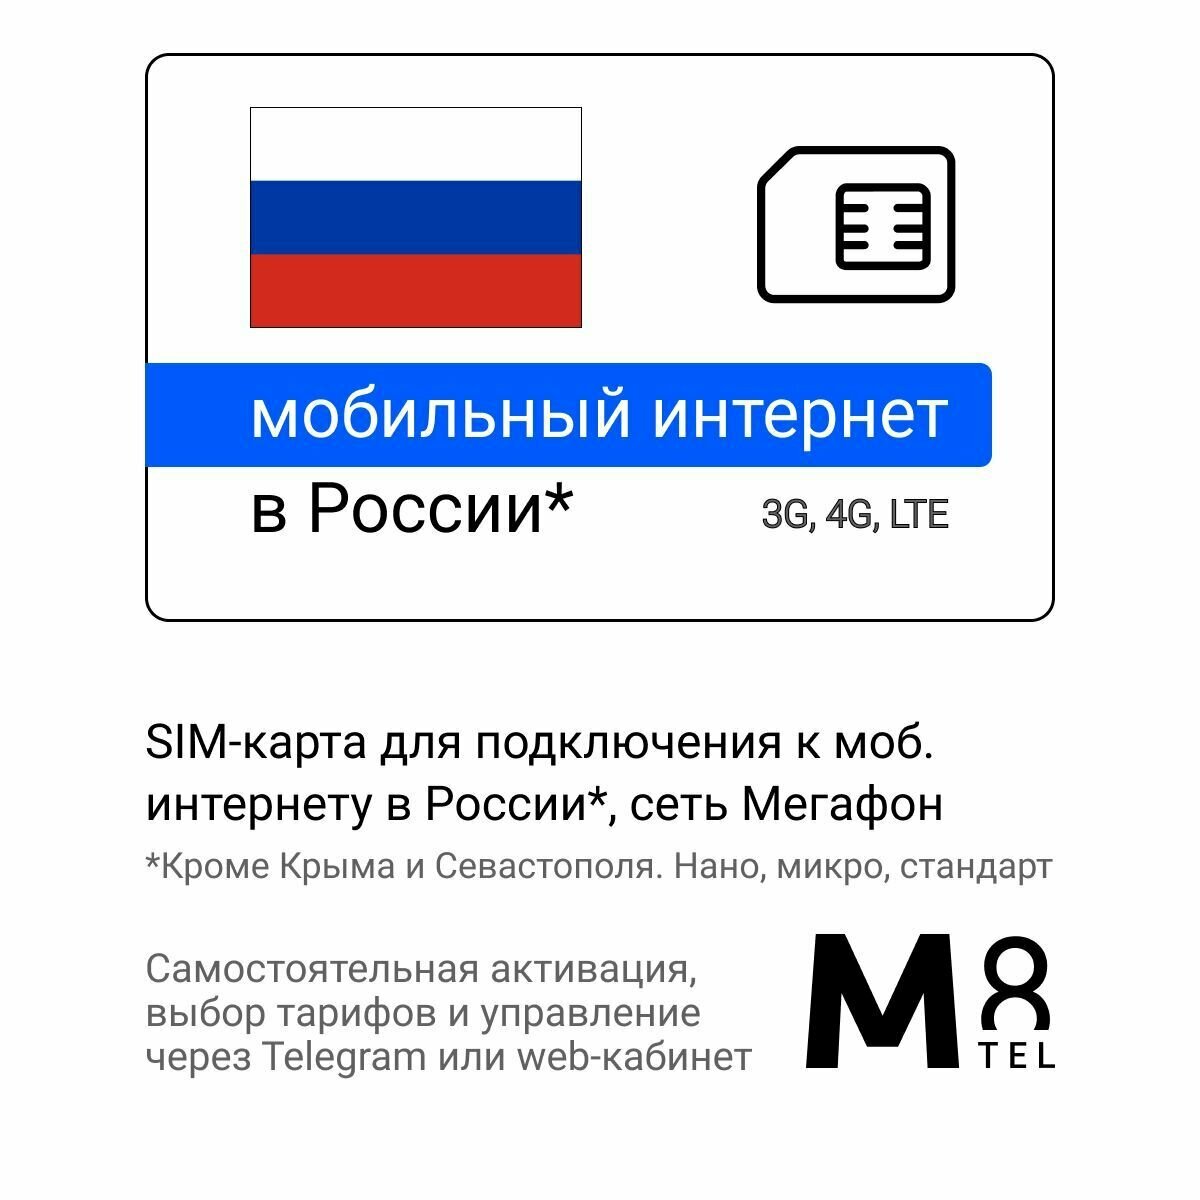 SIM-карта для России от М8 (нано микро стандарт). Сеть Мегафон